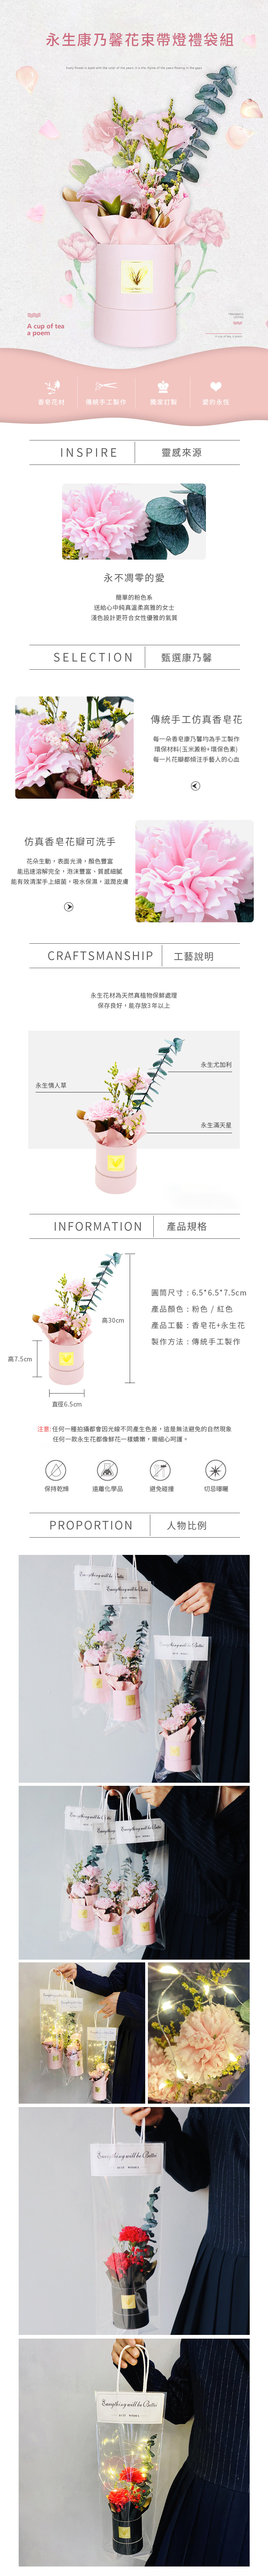 創意小物館 永生康乃馨花束帶燈禮袋組 粉色